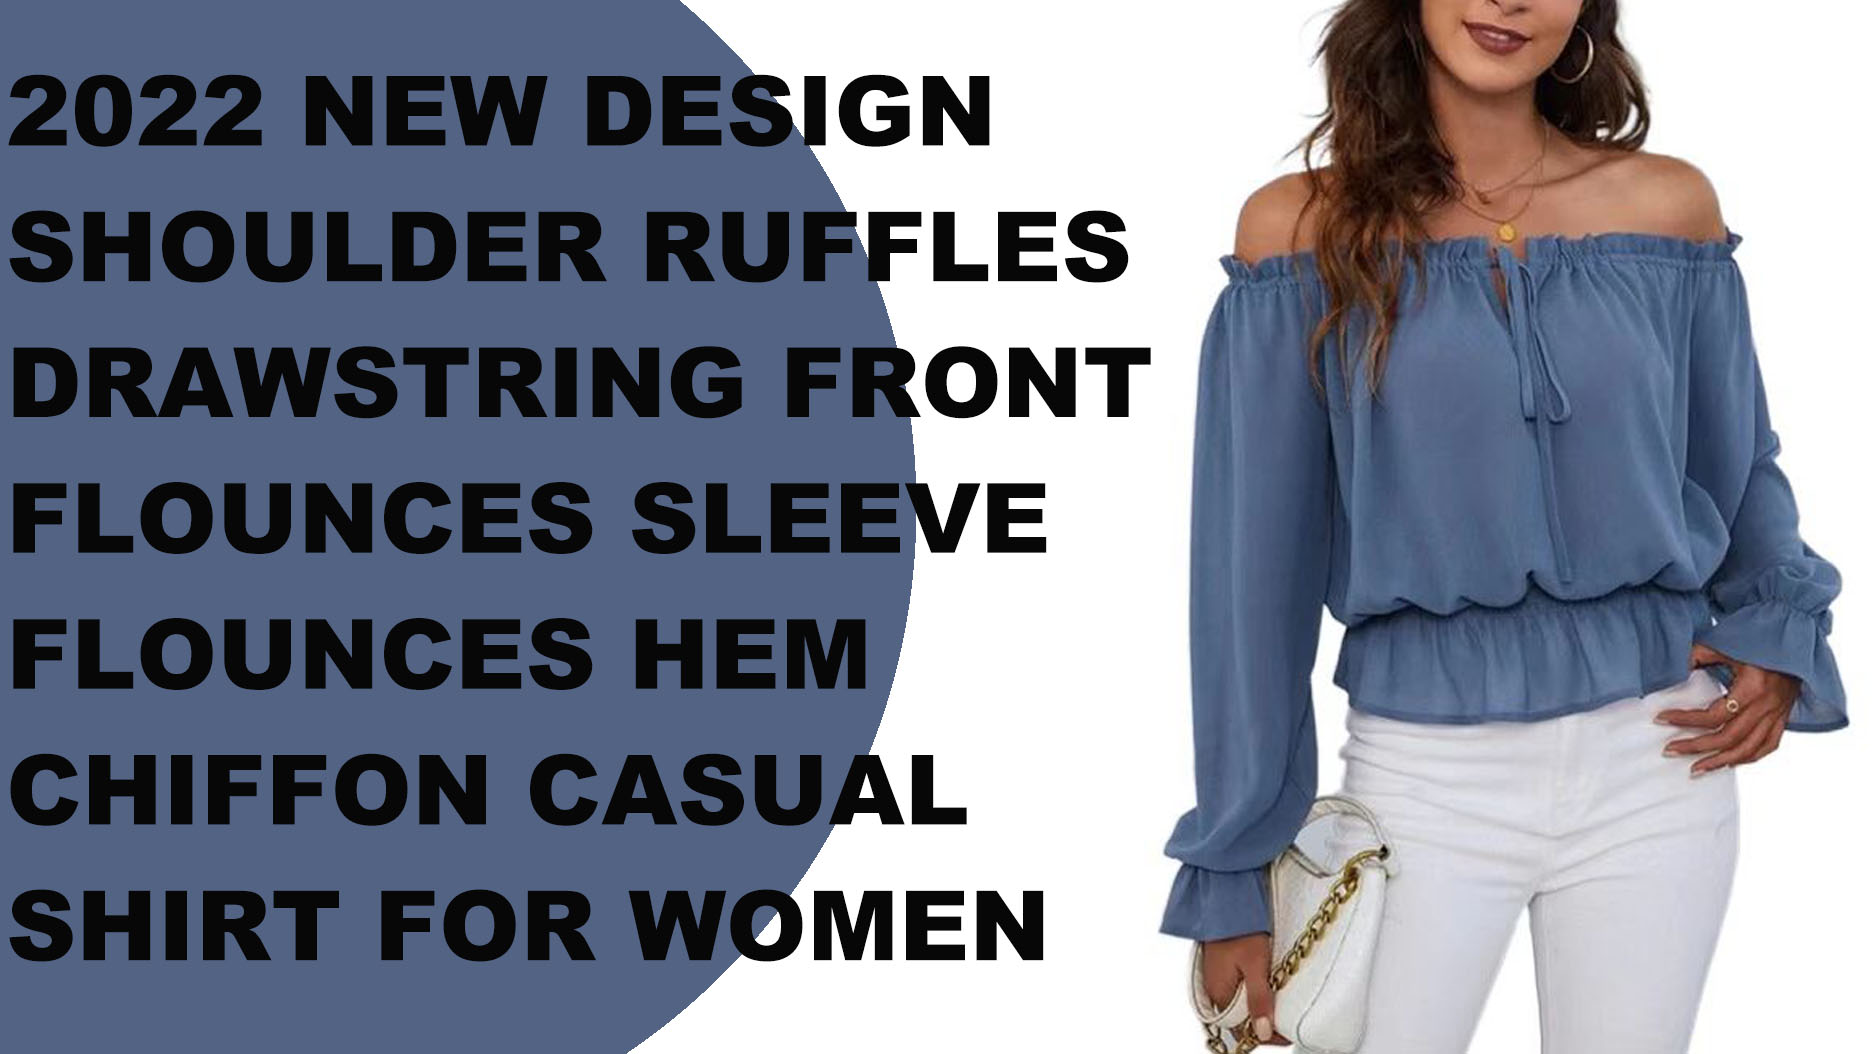 ruffles drawstring chiffon casual shirt women